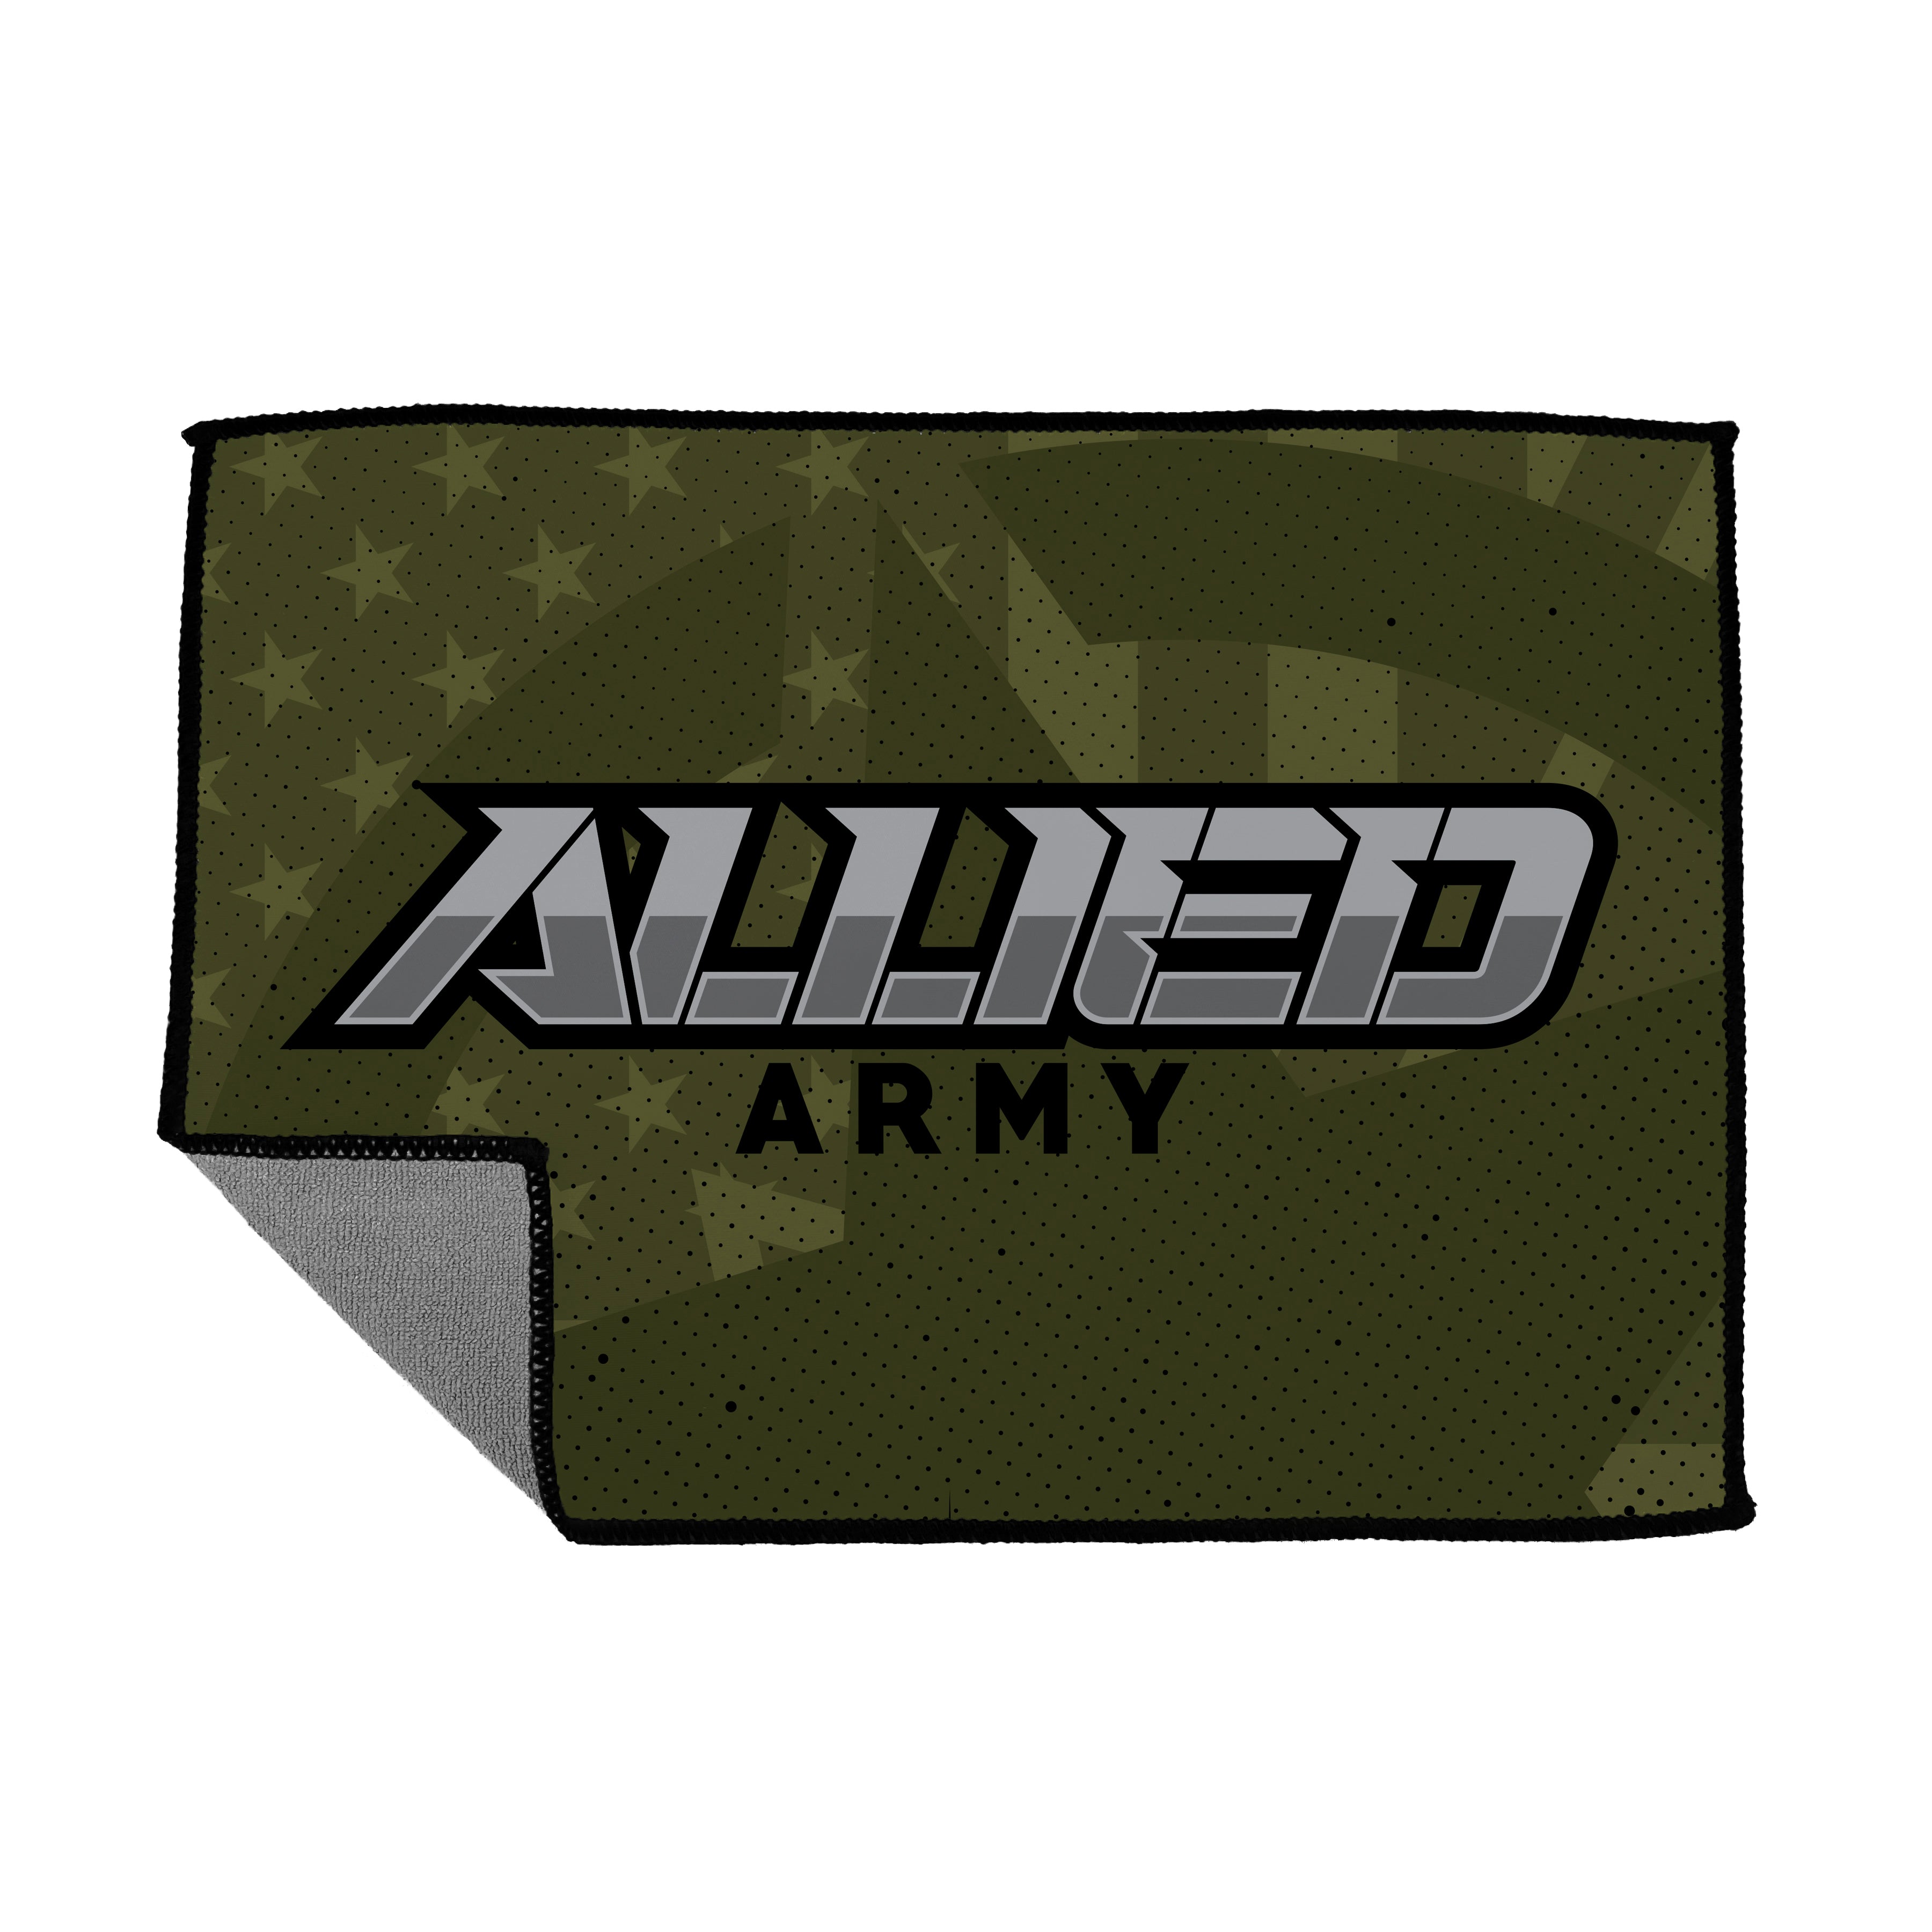 Allied Army - Microfiber Cloth